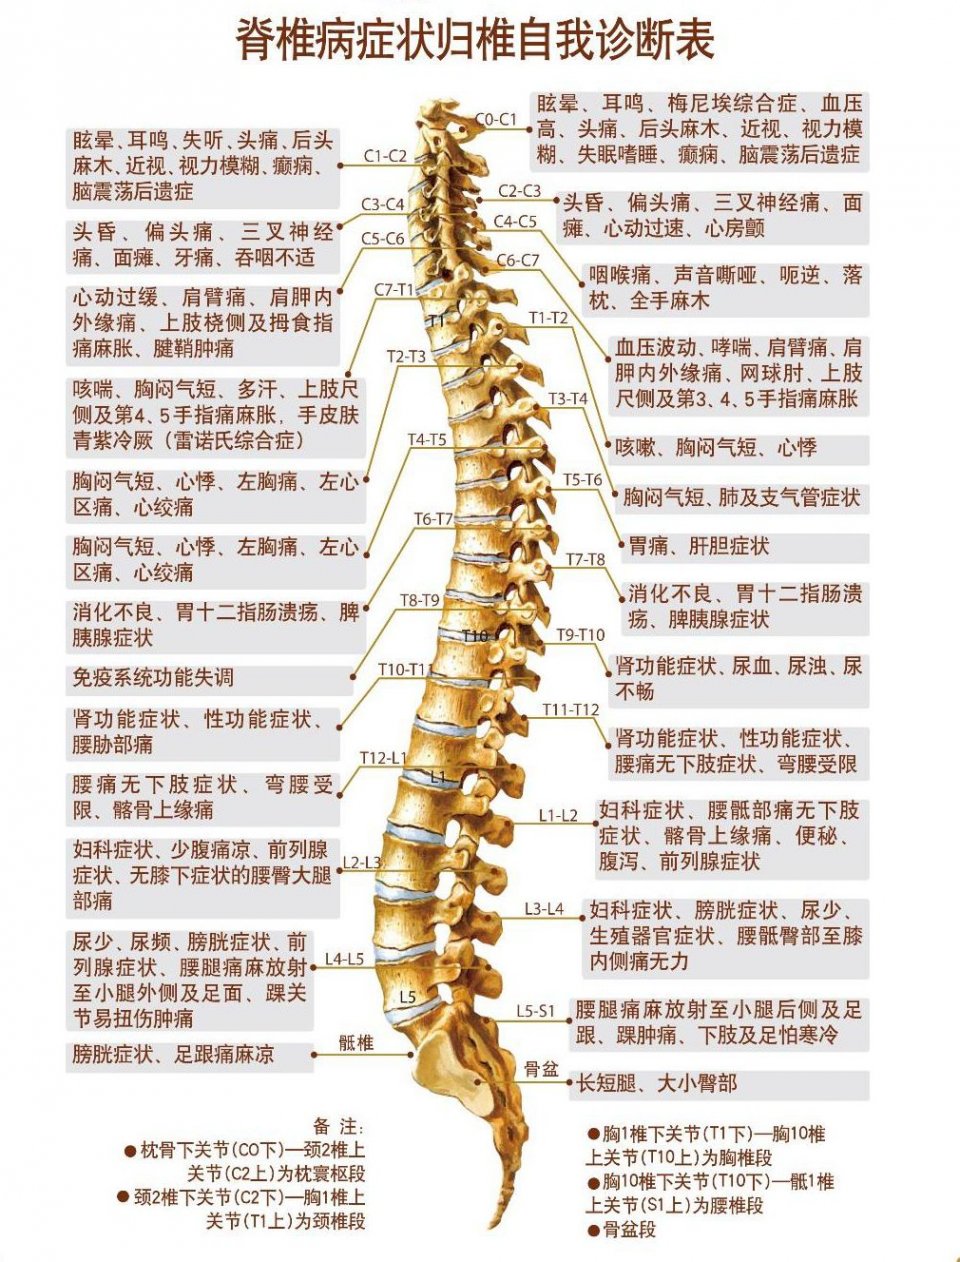 由于人体的神经与脊椎相通,一旦脊椎关节突错位,压迫到周围的神经,就